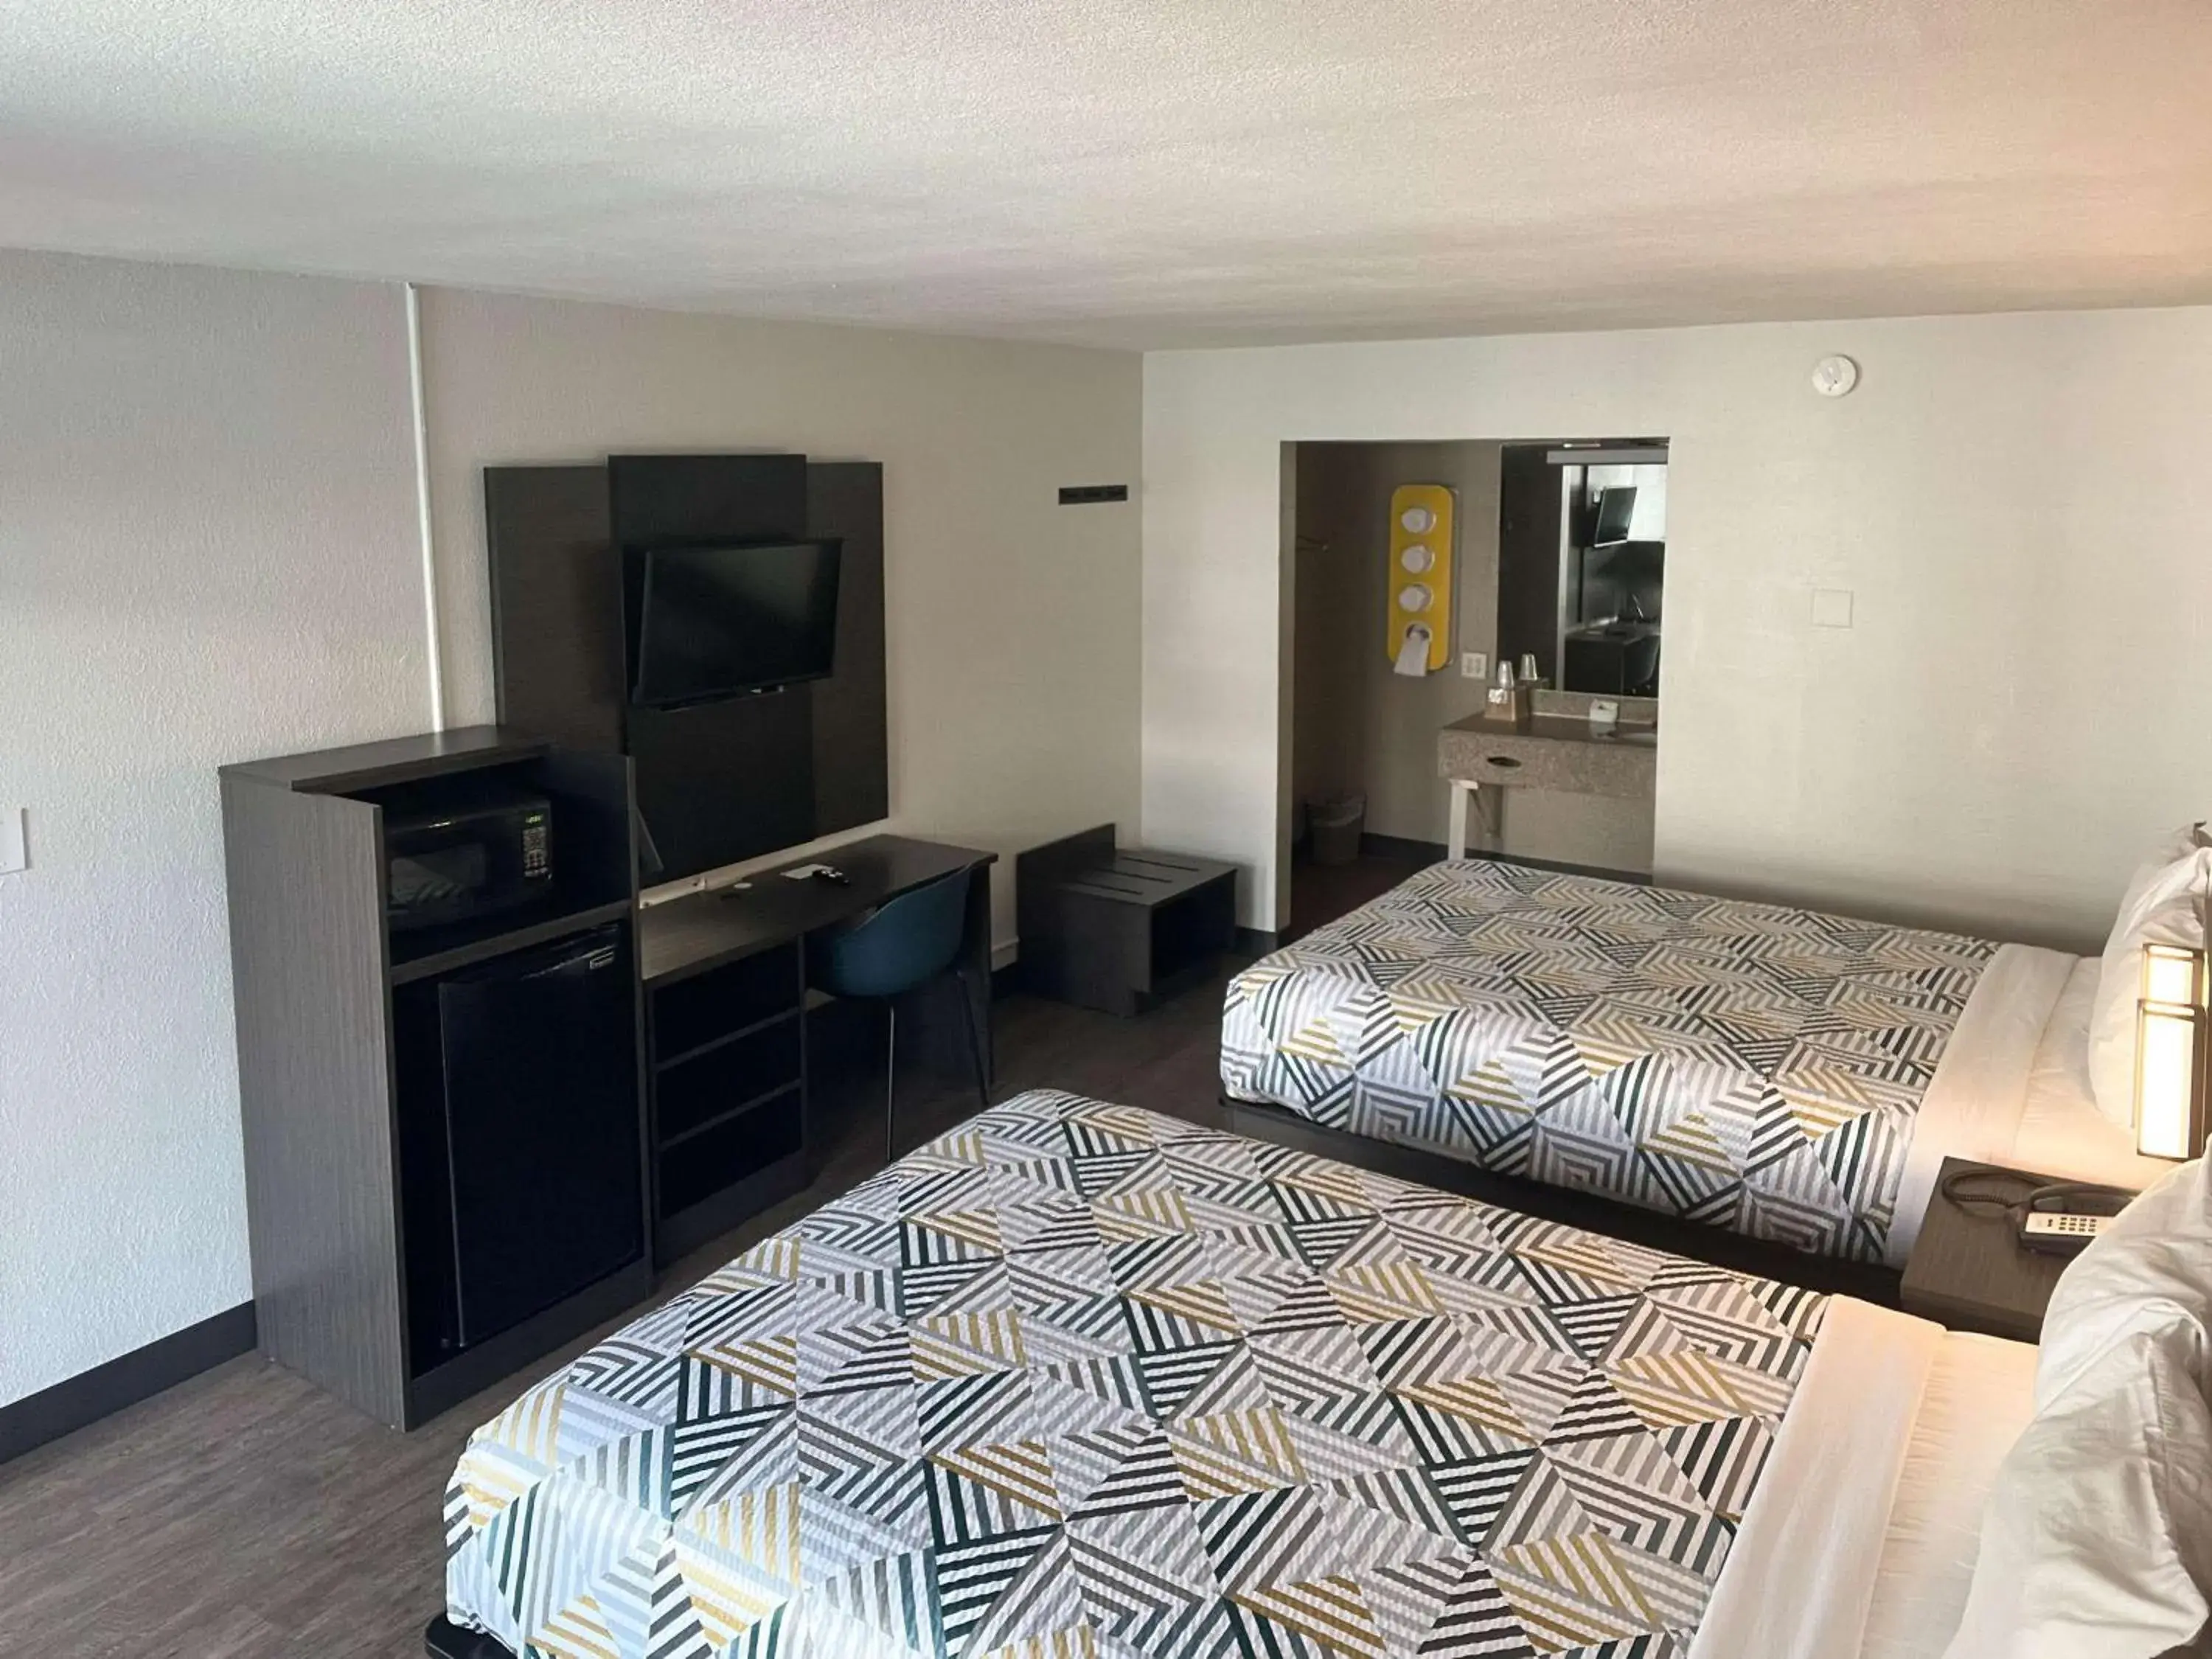 Bedroom, TV/Entertainment Center in Motel 6 Glendale AZ